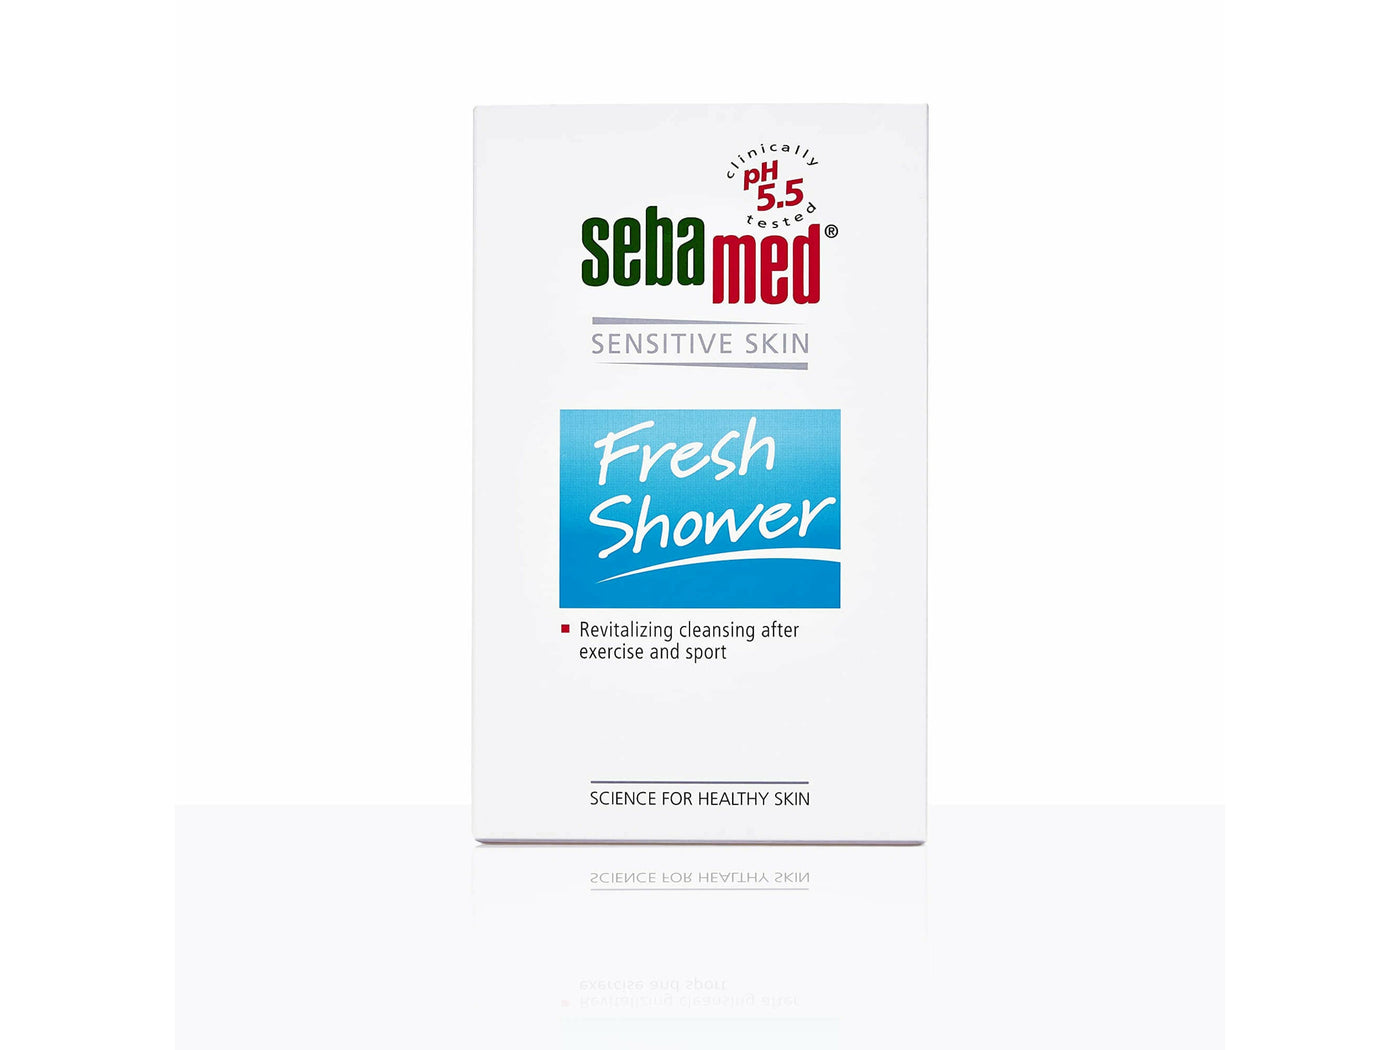 Sebamed Sensitive Skin Fresh Shower-Clinikally